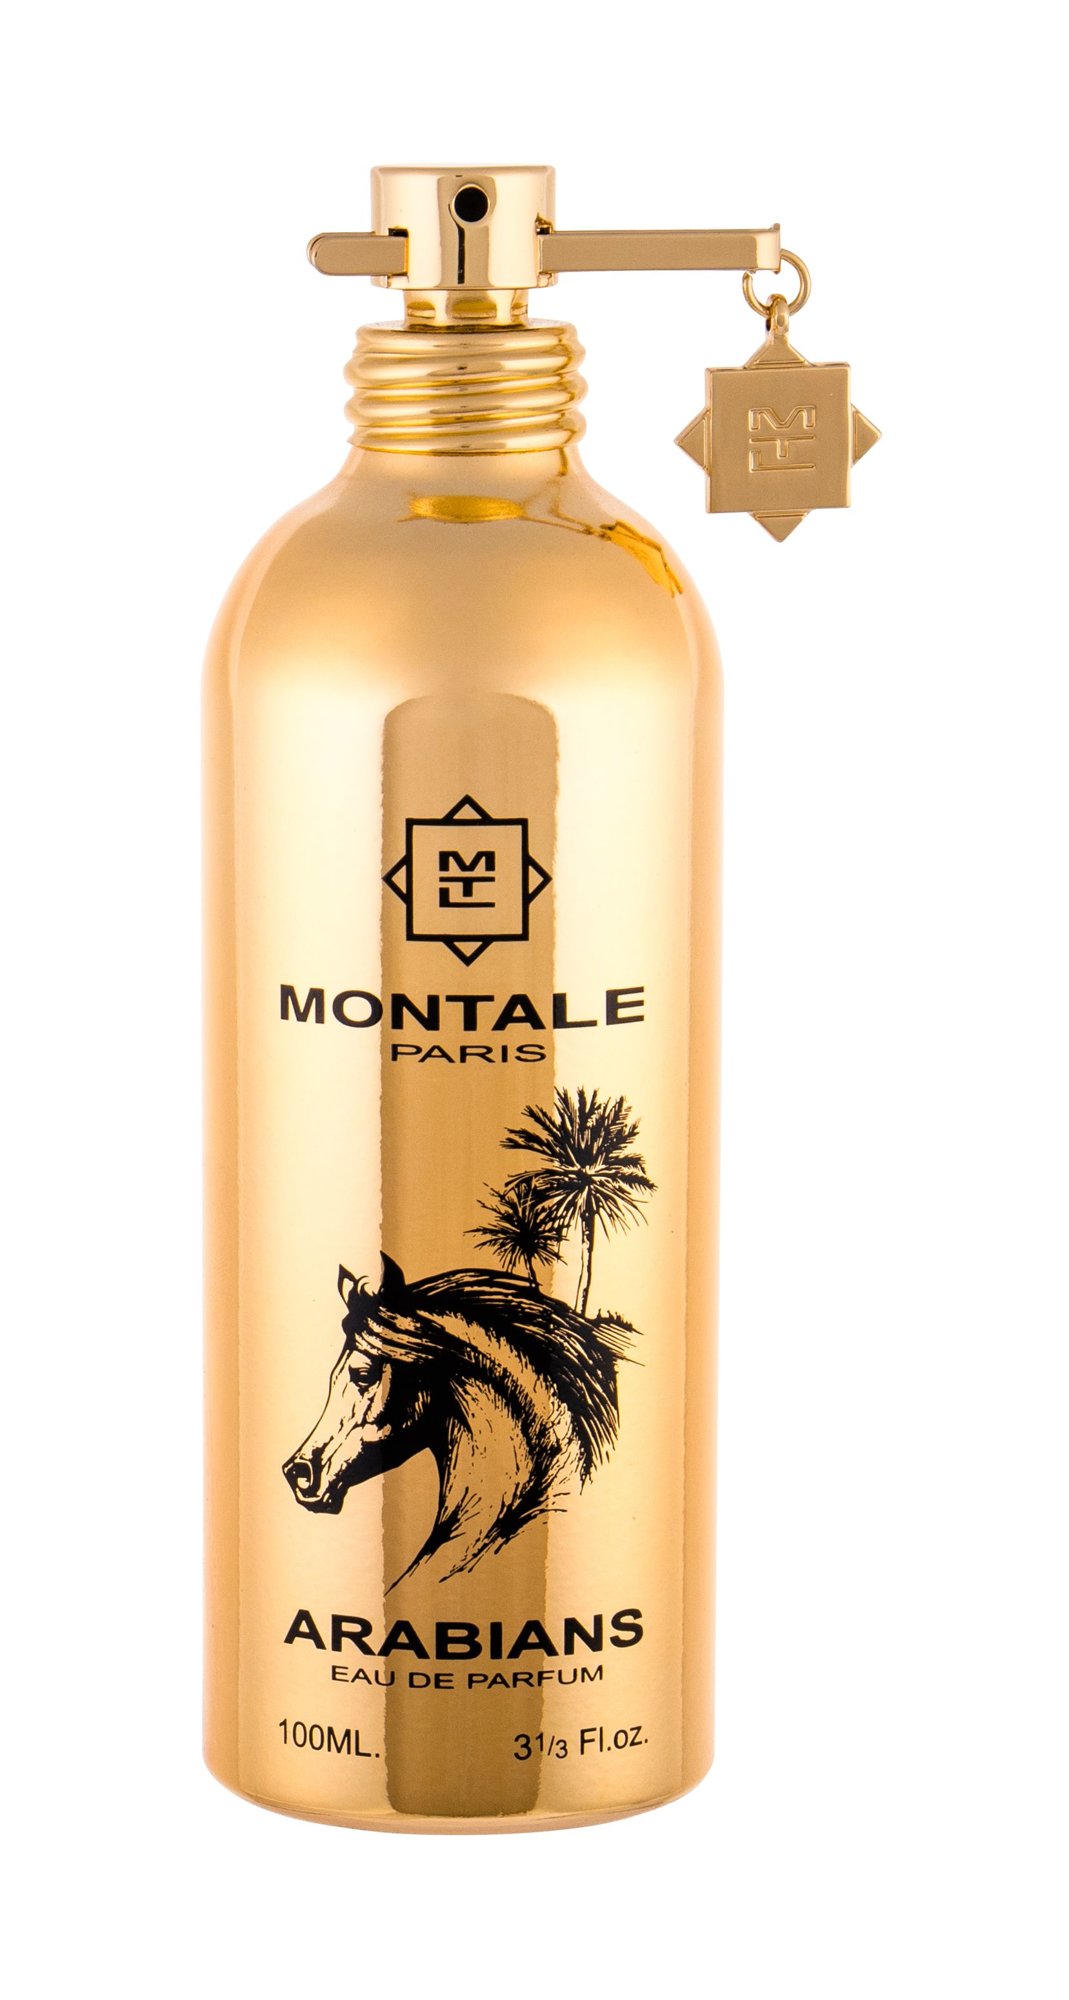 Montale Paris Arabians 20 ml NIŠINIAI kvepalų mėginukas (atomaizeris) Unisex EDP